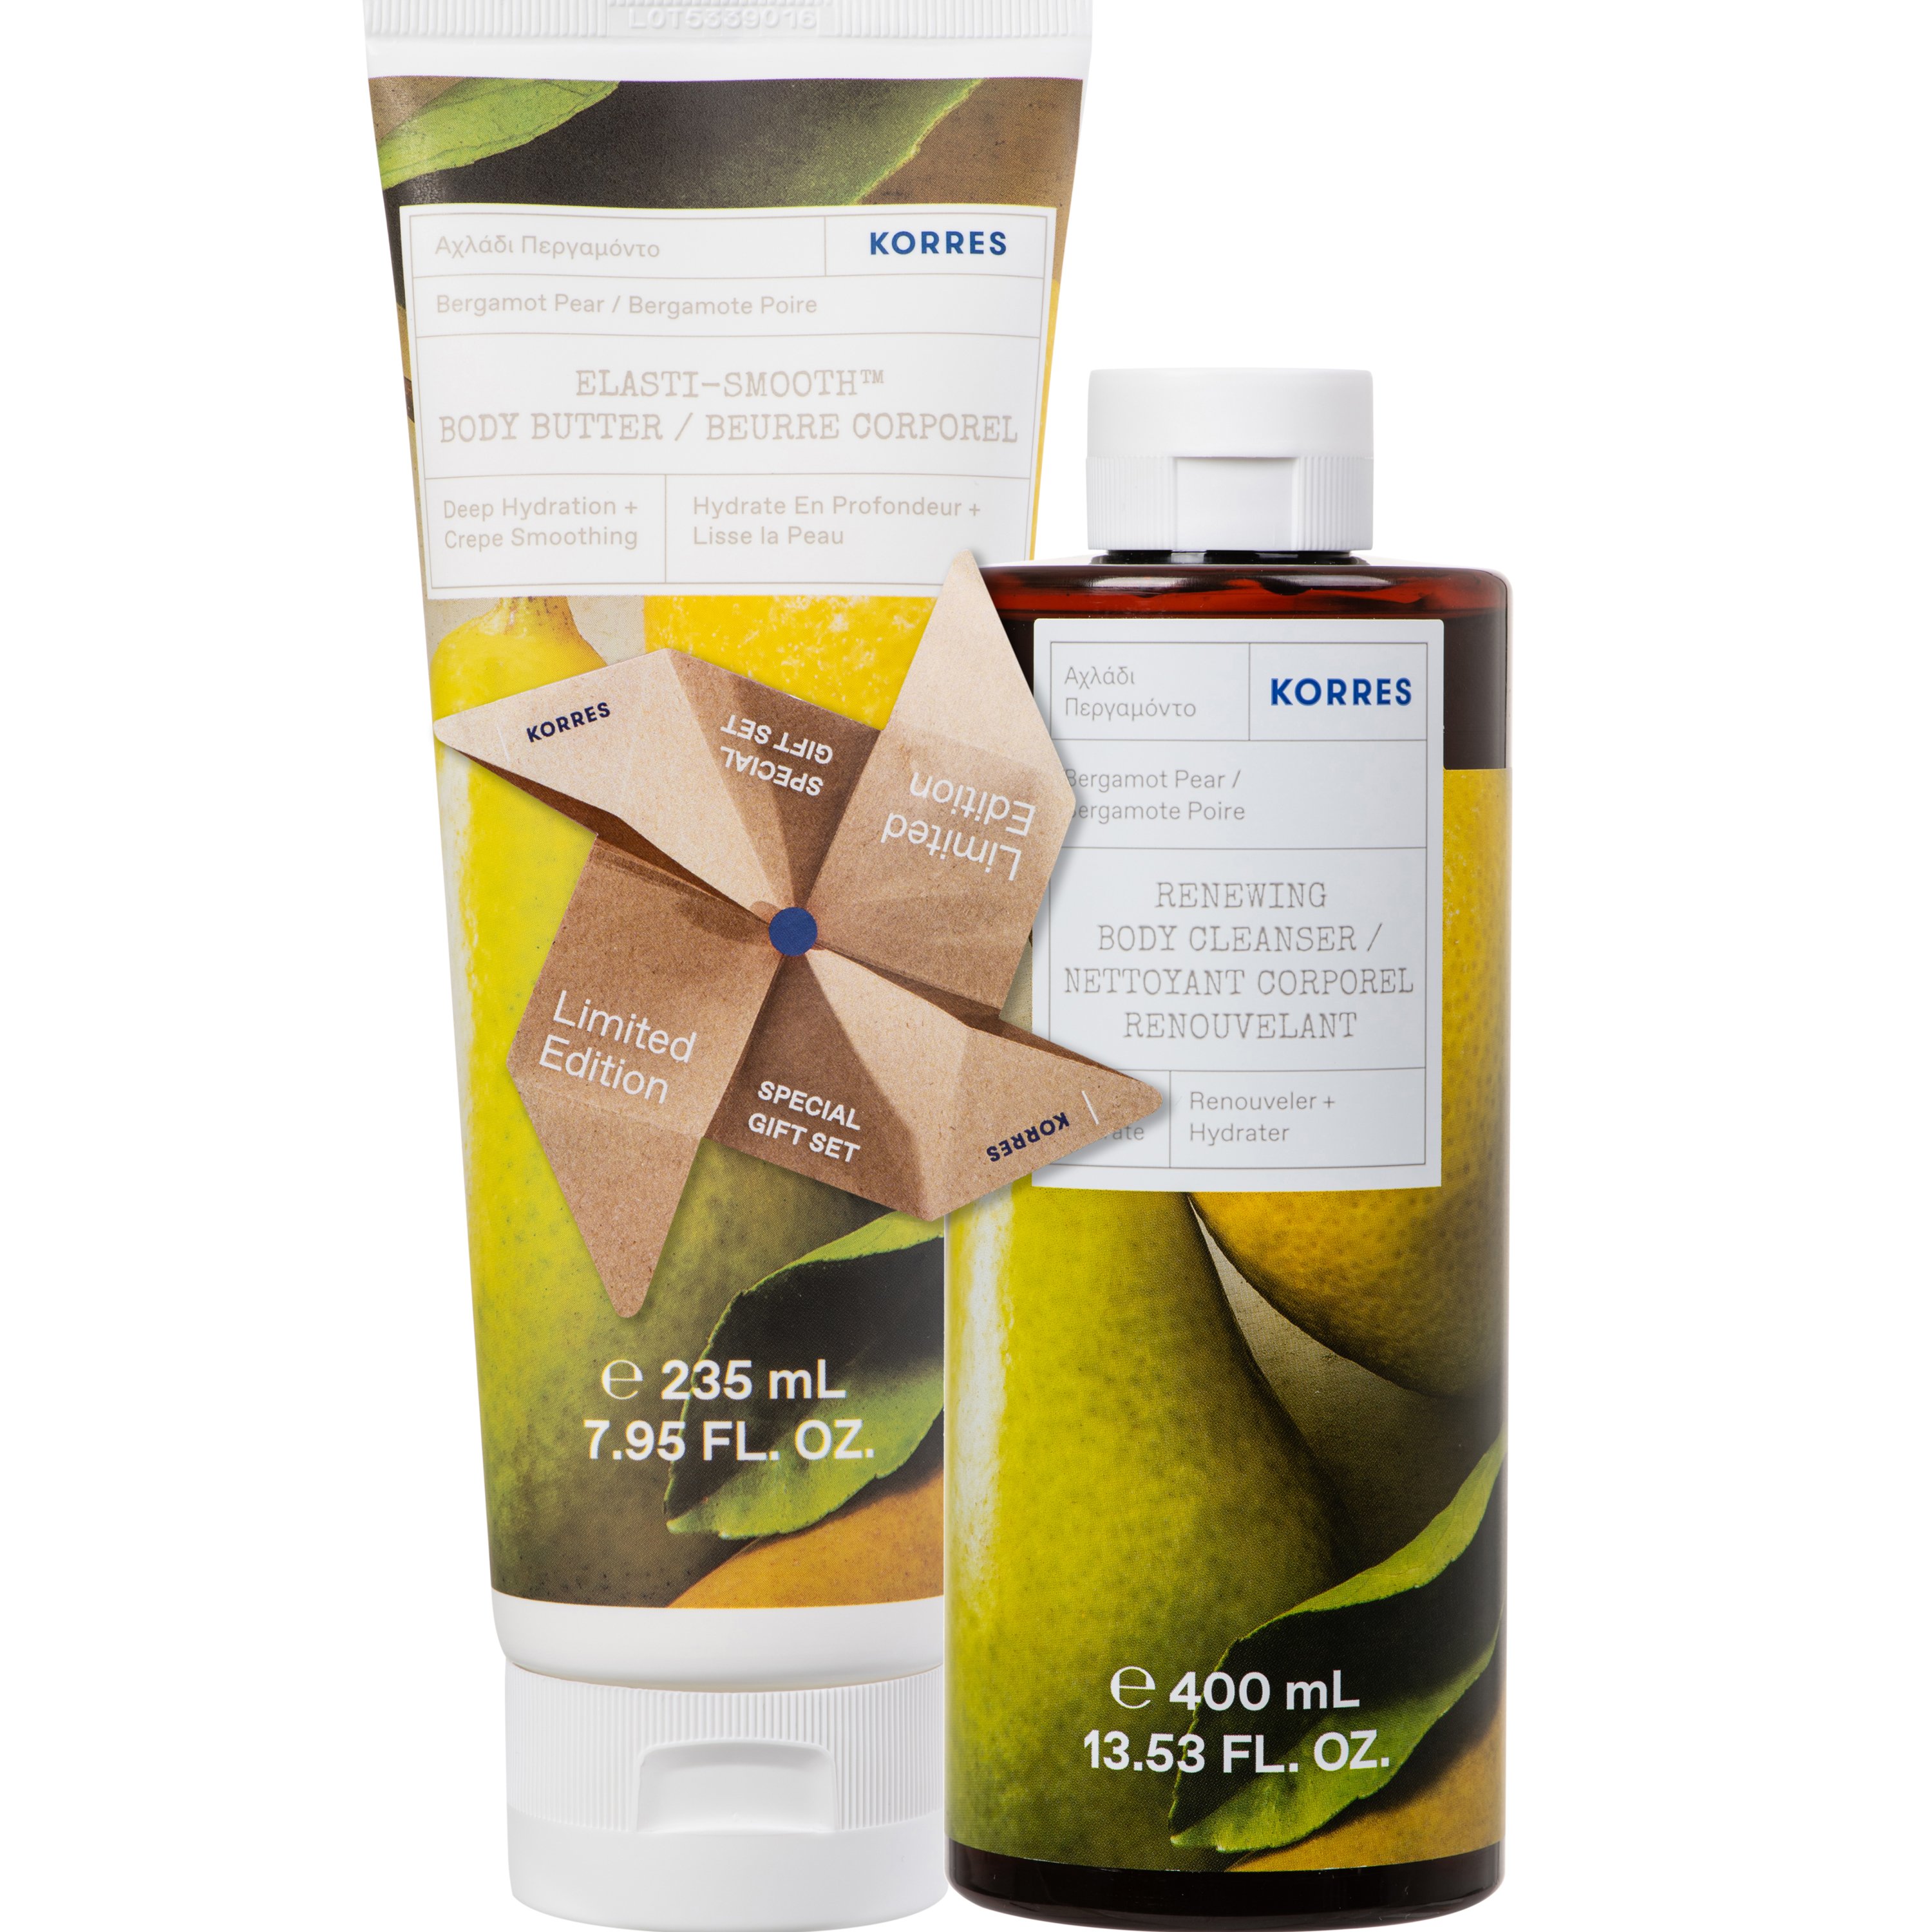 Korres Promo Renewing Body Cleanser Bergamot Pear Shower Gel 400ml & Elasti – Smooth Body Buttter 235ml